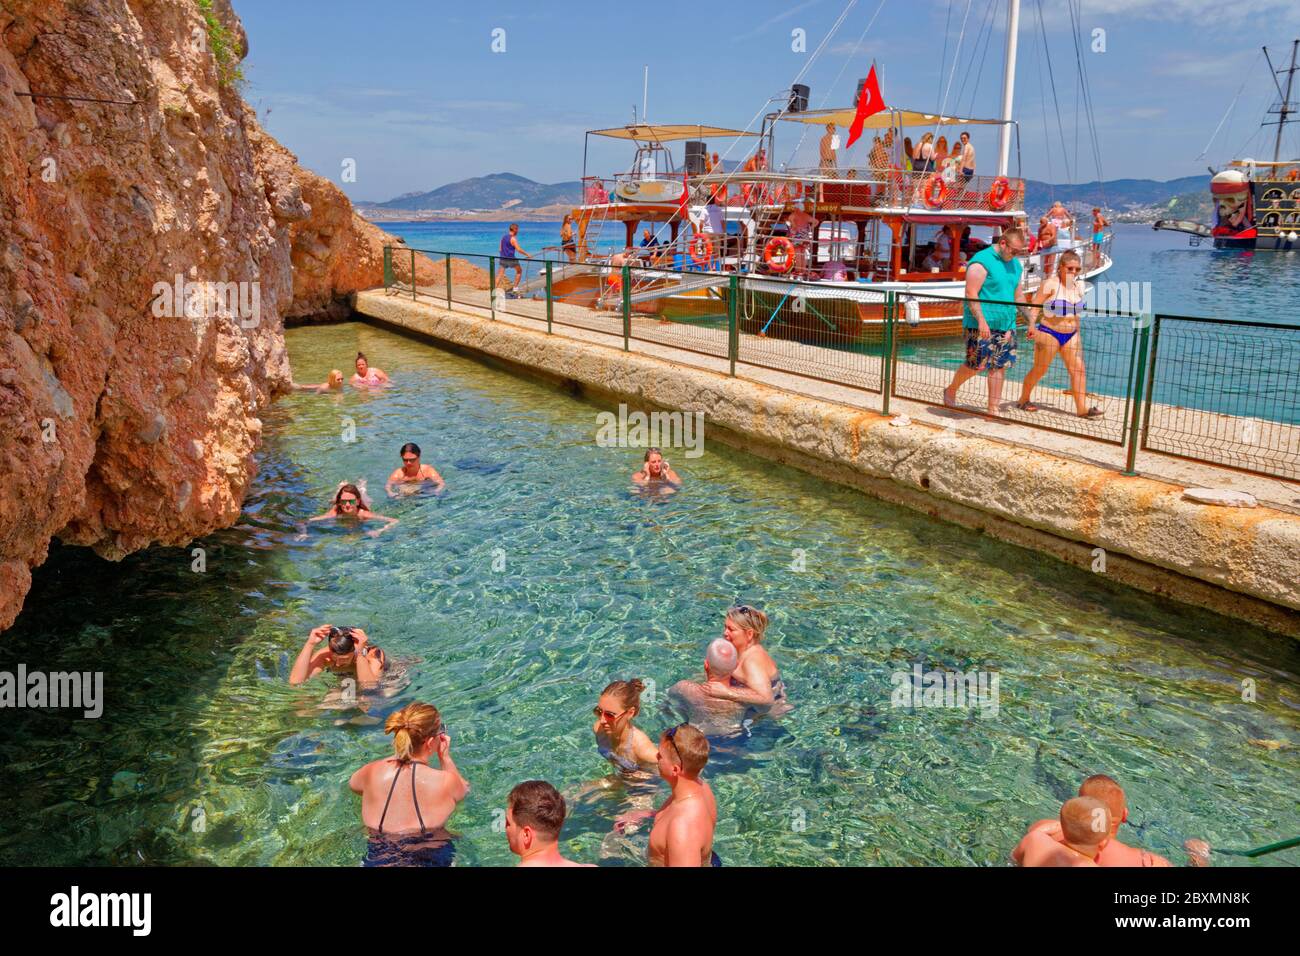 Cleopatra's Cave y piscina de aguas termales en Isla Negra enfrente de la ciudad de Bodrum, en la provincia de Mugla, Turquía. Foto de stock